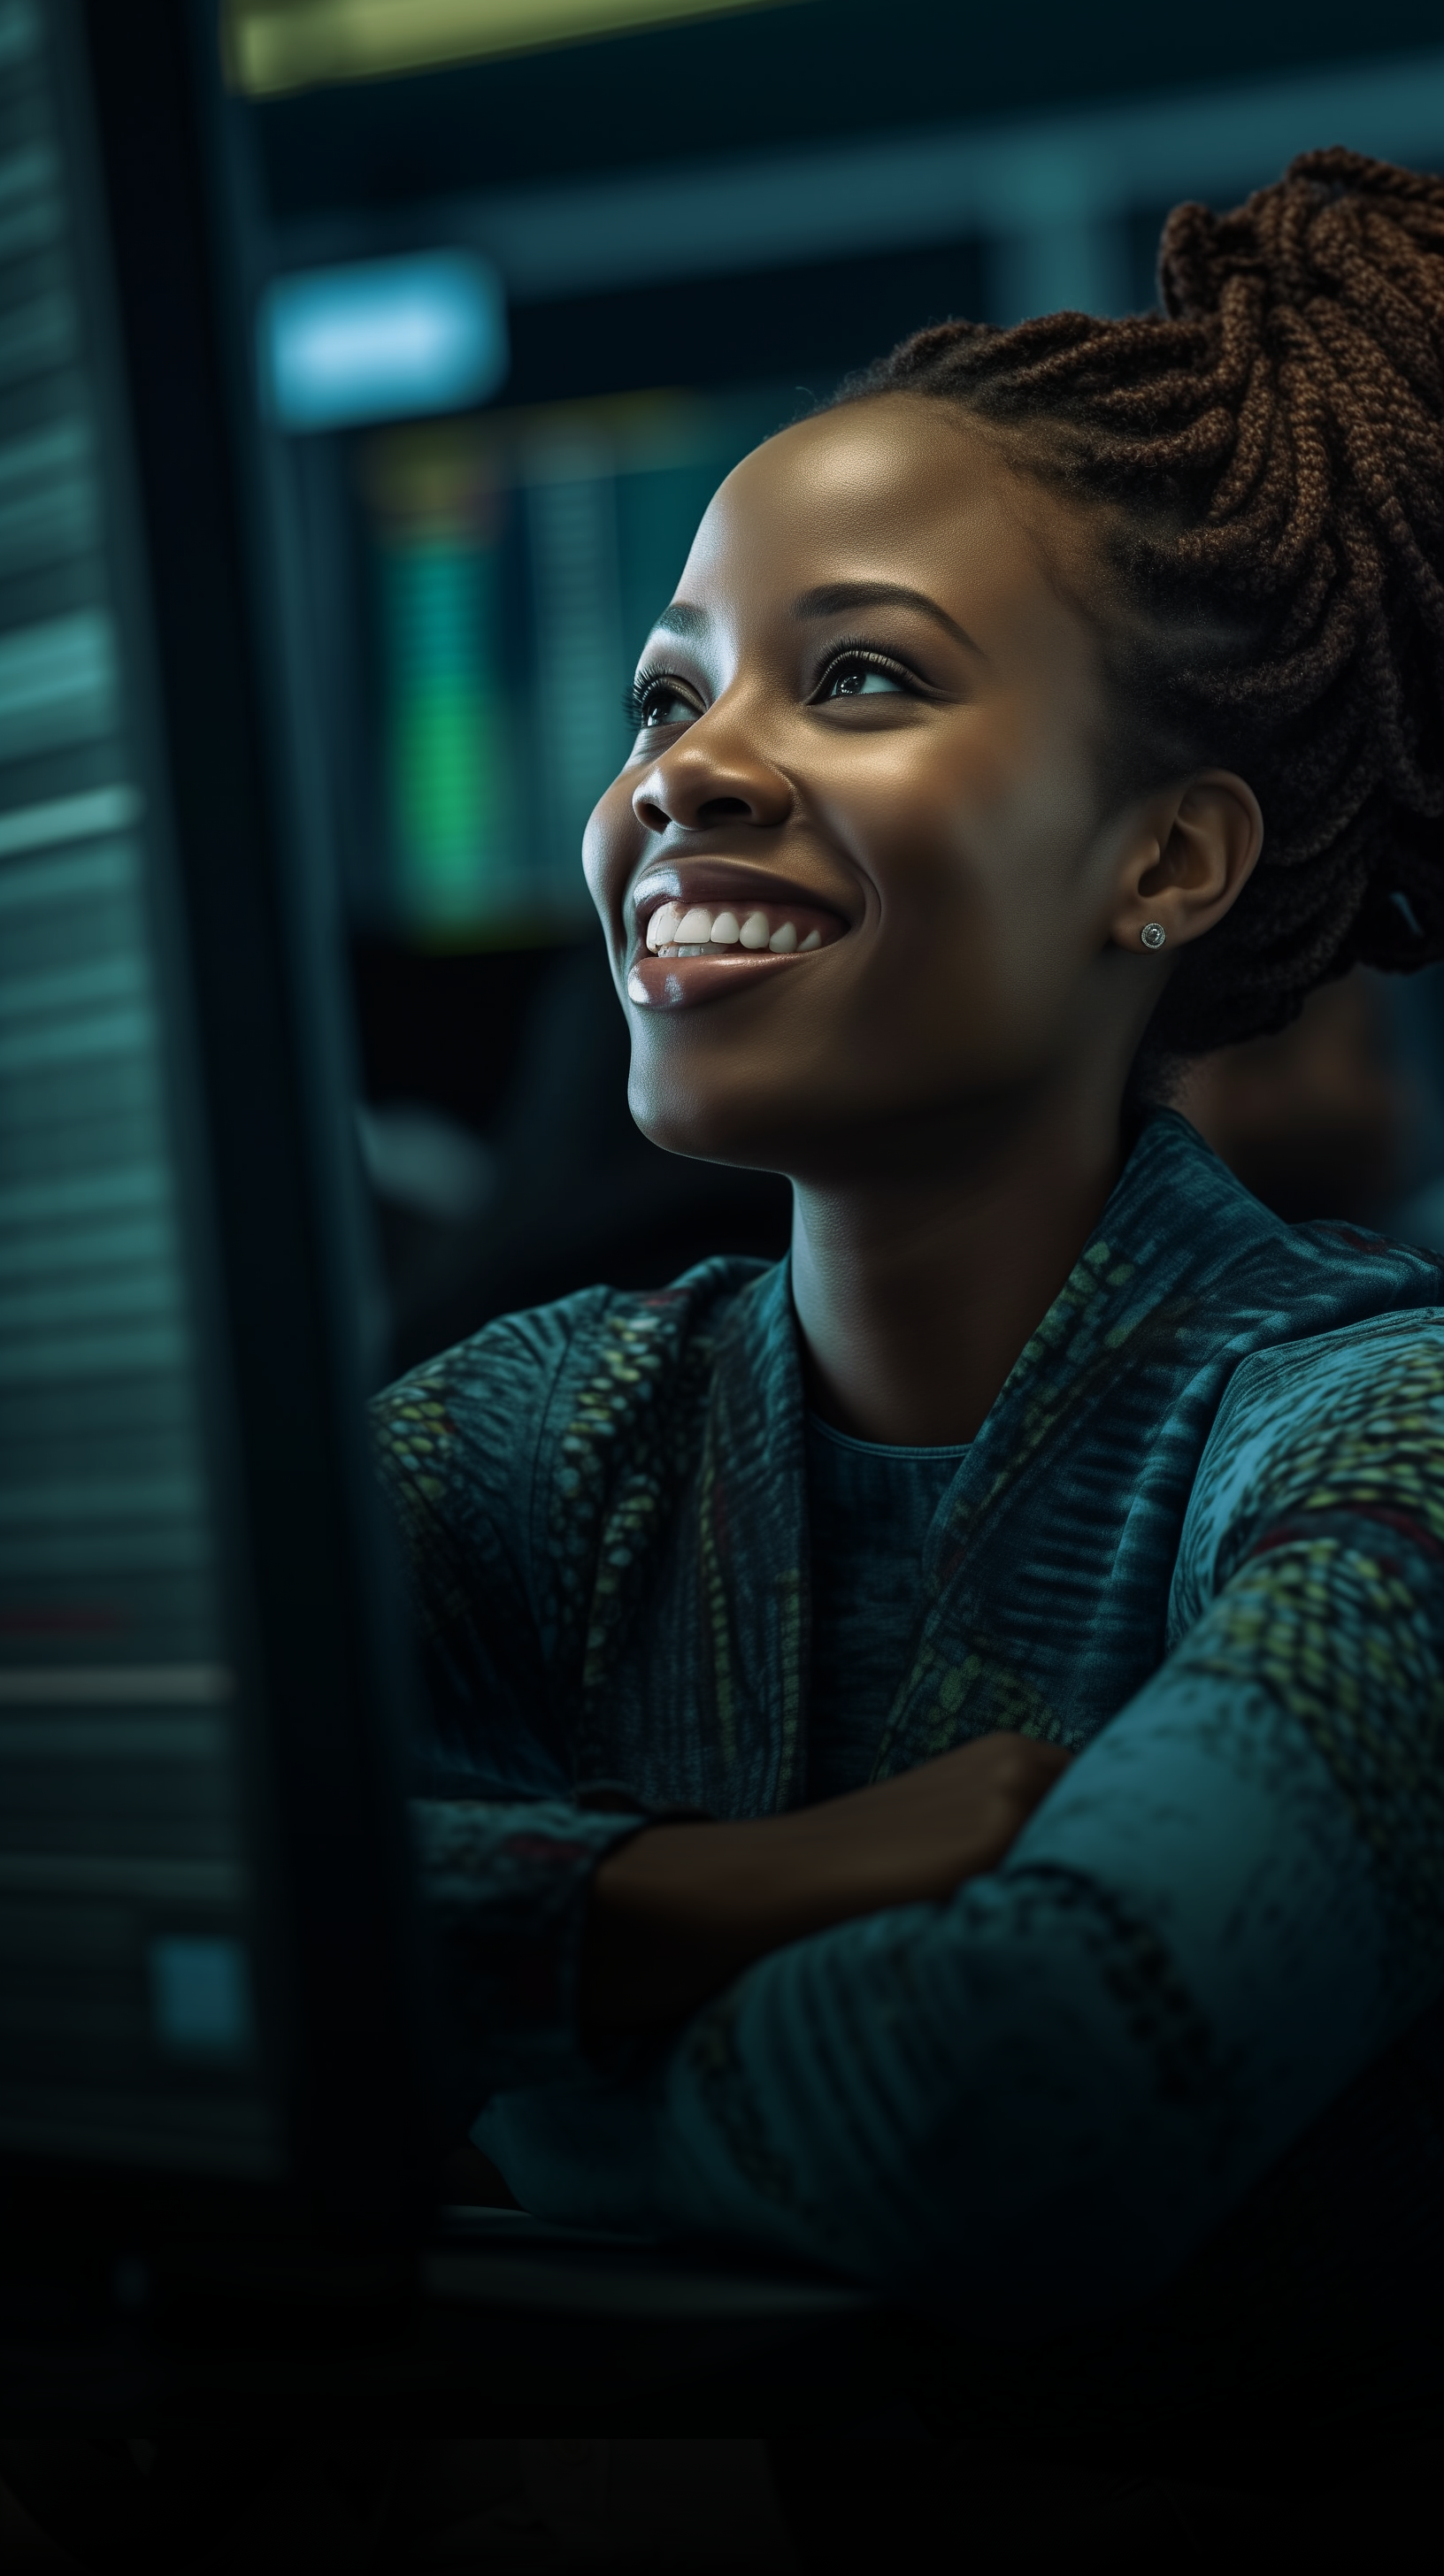 Uma mulher está sorrindo enquanto olha para a tela de um computador.